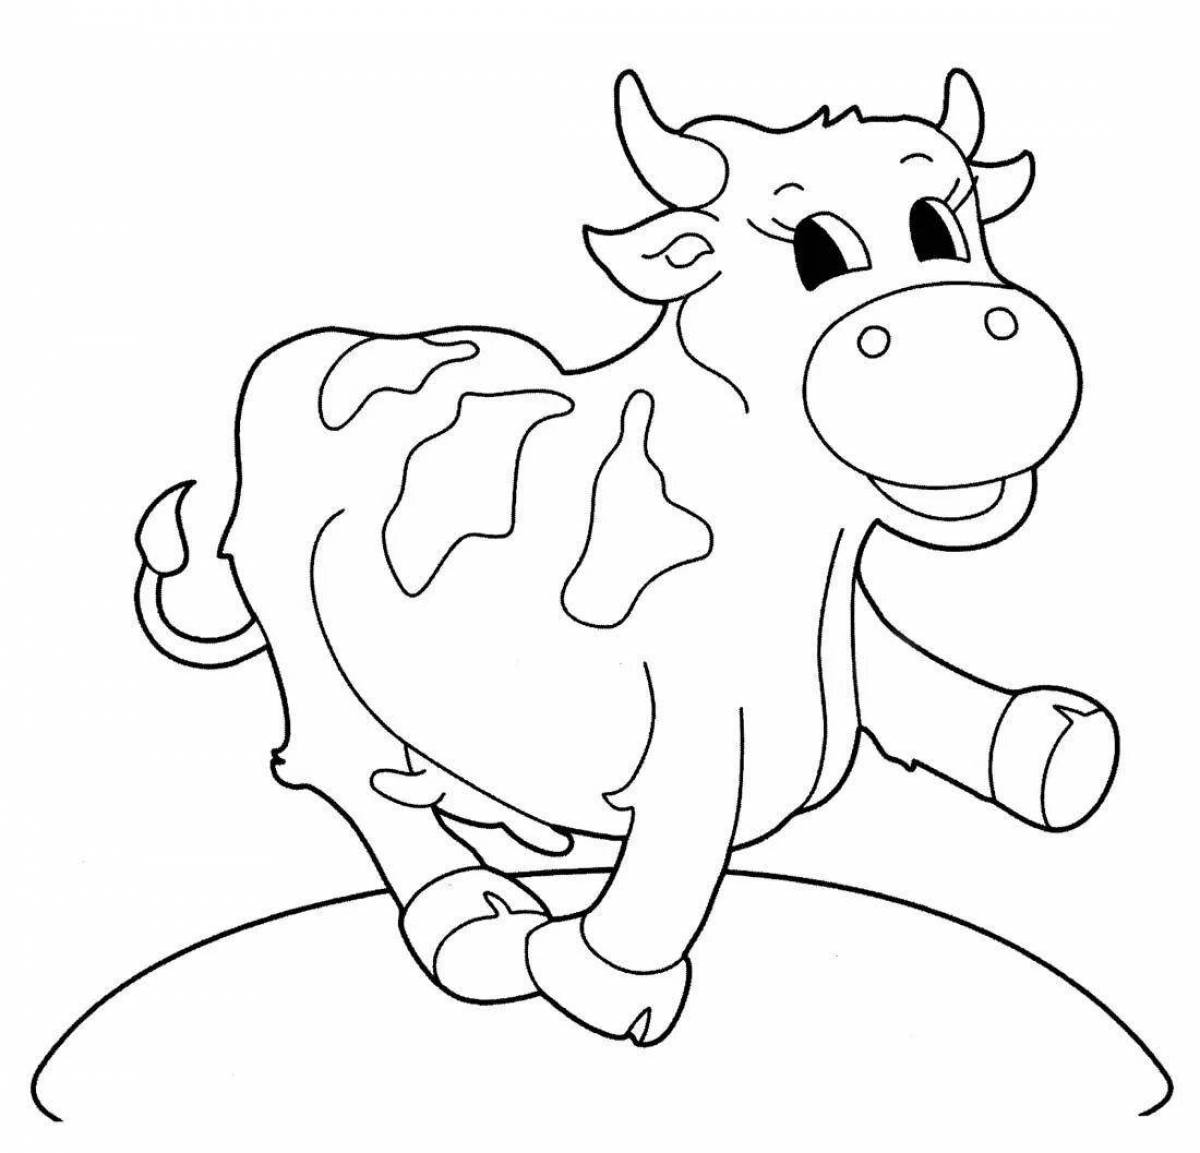 Раскраска радостный теленок для детей